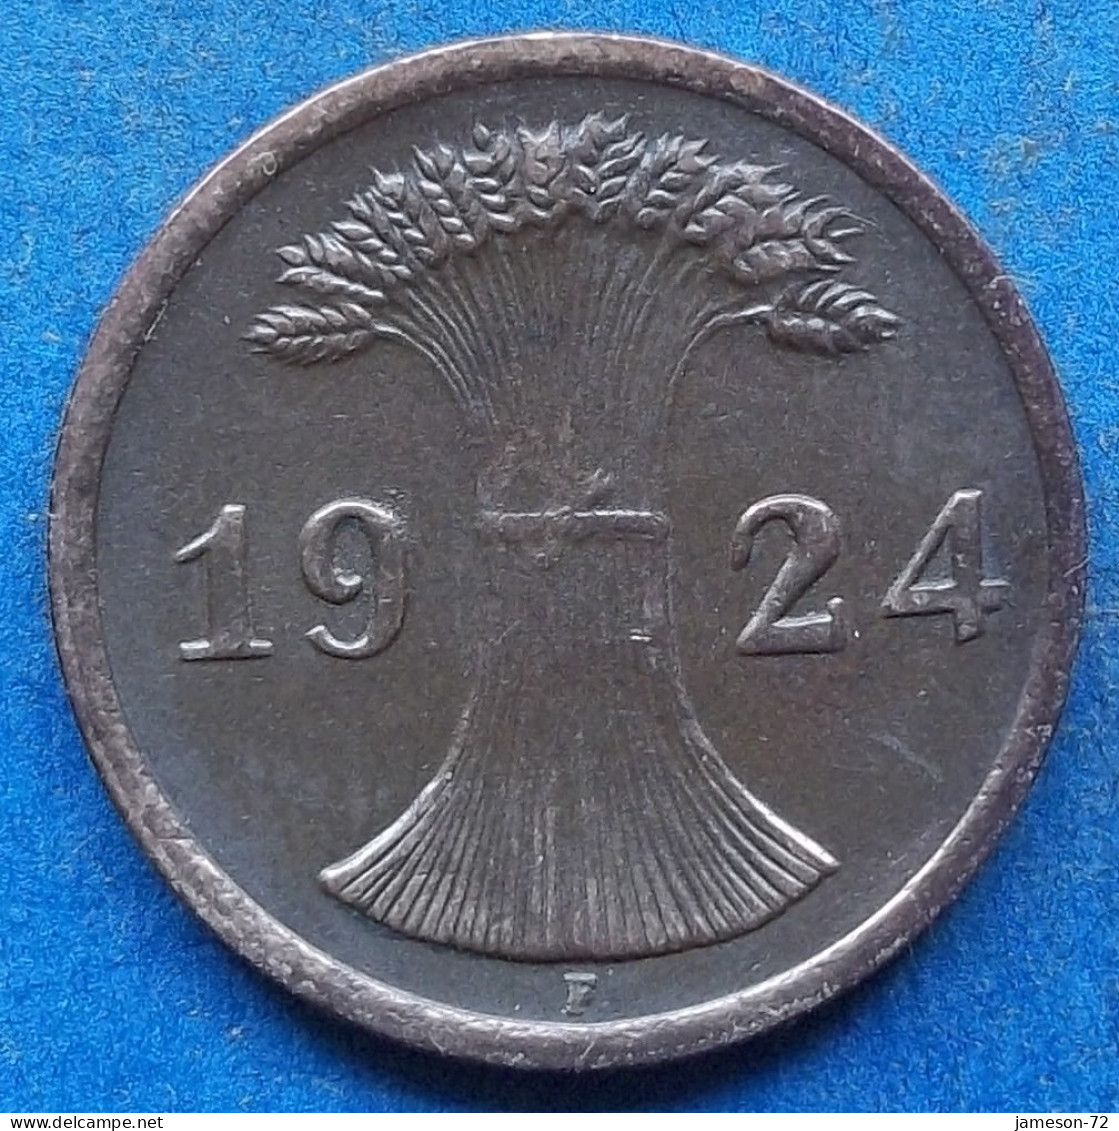 GERMANY - 2 Reichspfennig 1924 F KM# 38 Weimar Republic Reichsmark Coinage (1924-1938) - Edelweiss Coins - 2 Rentenpfennig & 2 Reichspfennig